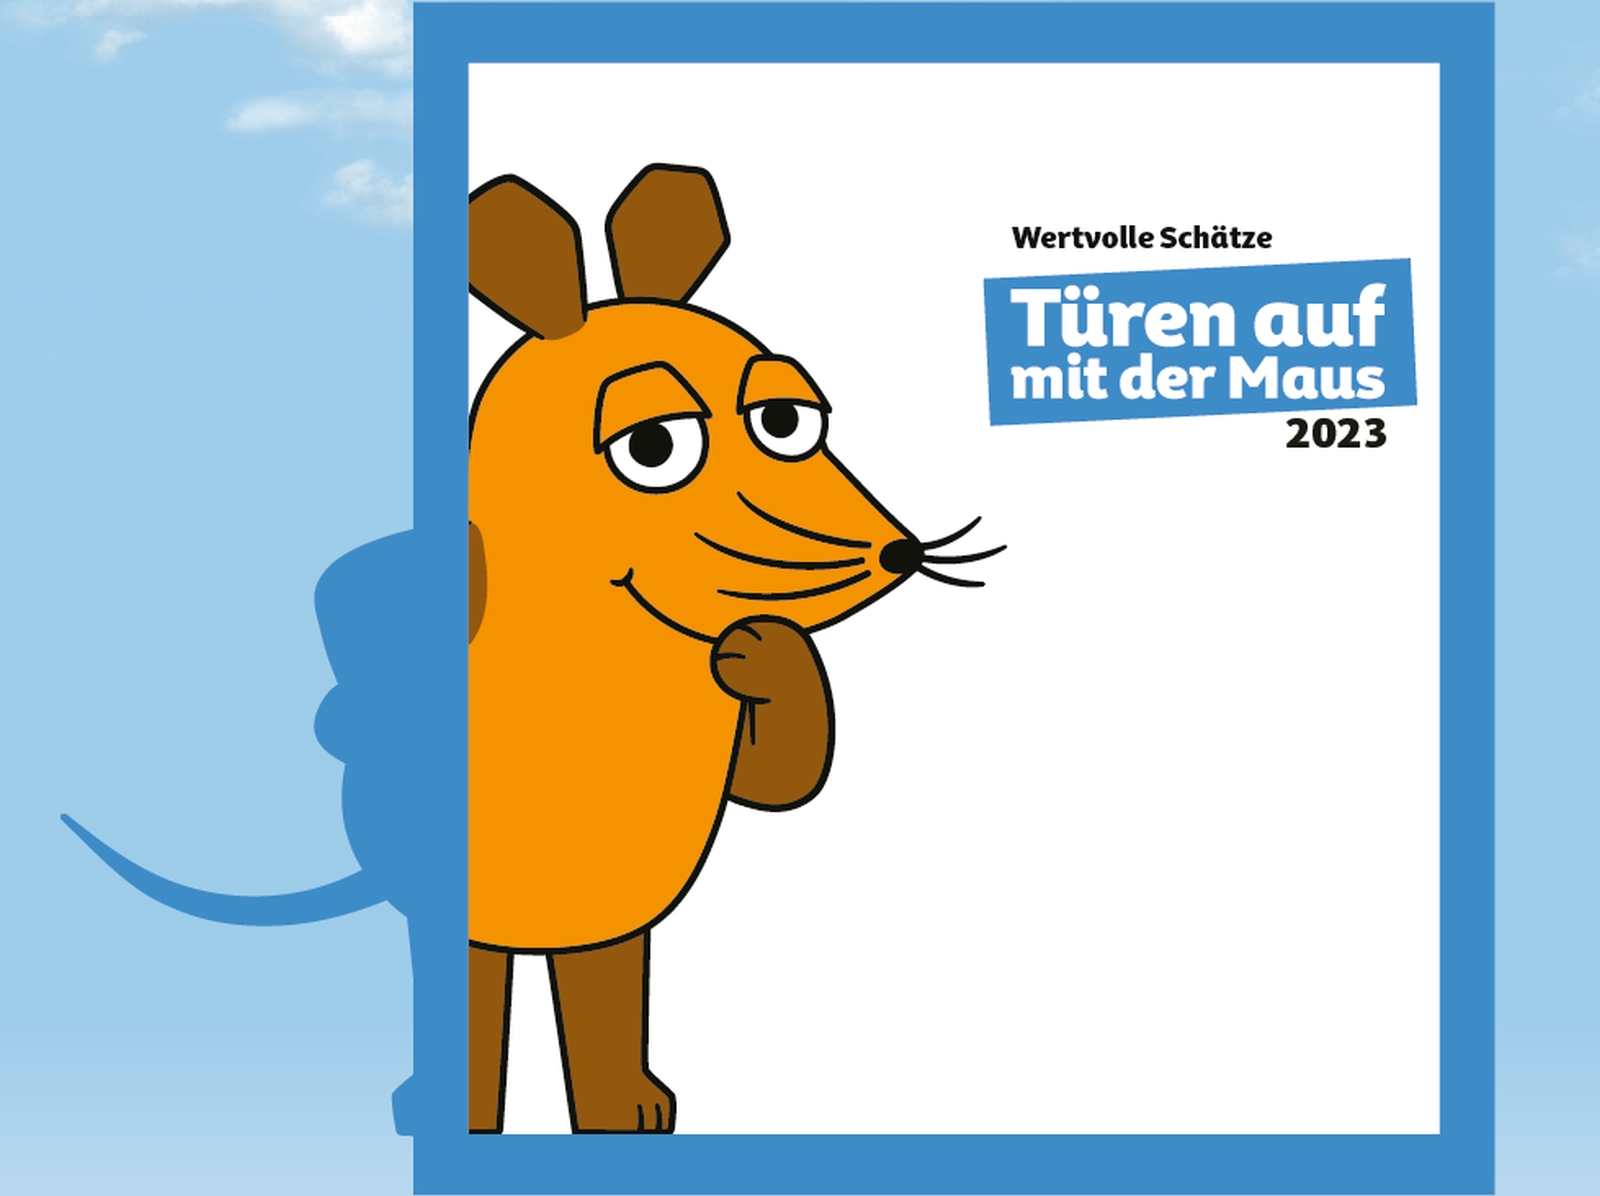 Die Zeichentrickfigur der "Maus" vom Westdeutschen Rundfunk lugt durch einen Türrahmen, darin steht der Schriftzug "Wertvolle Schätze / Türen auf mit der Maus / 2023".